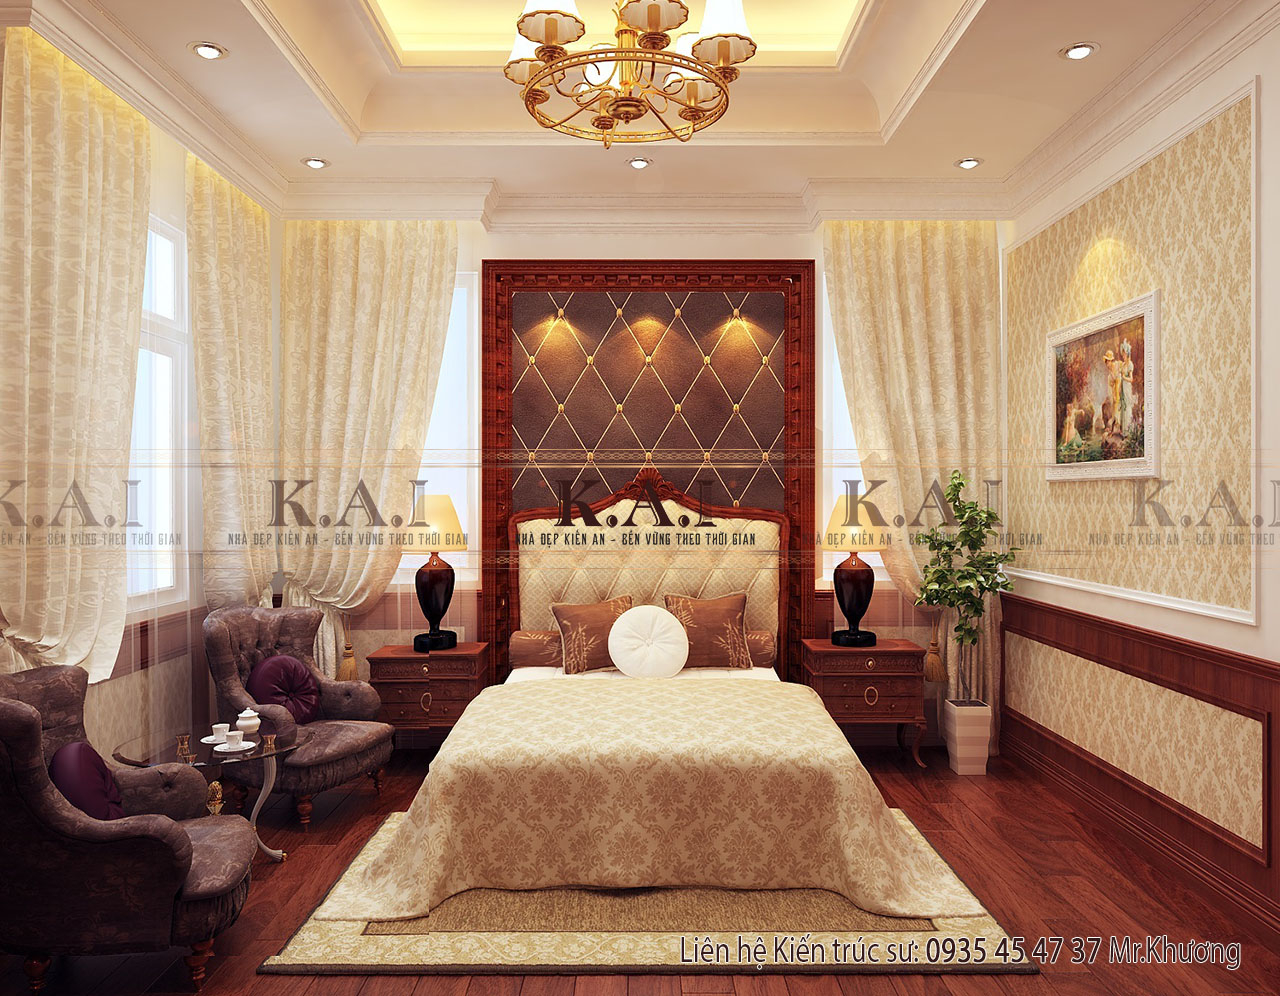 Thiết kế nội thất bán cổ điển cho phòng ngủ master